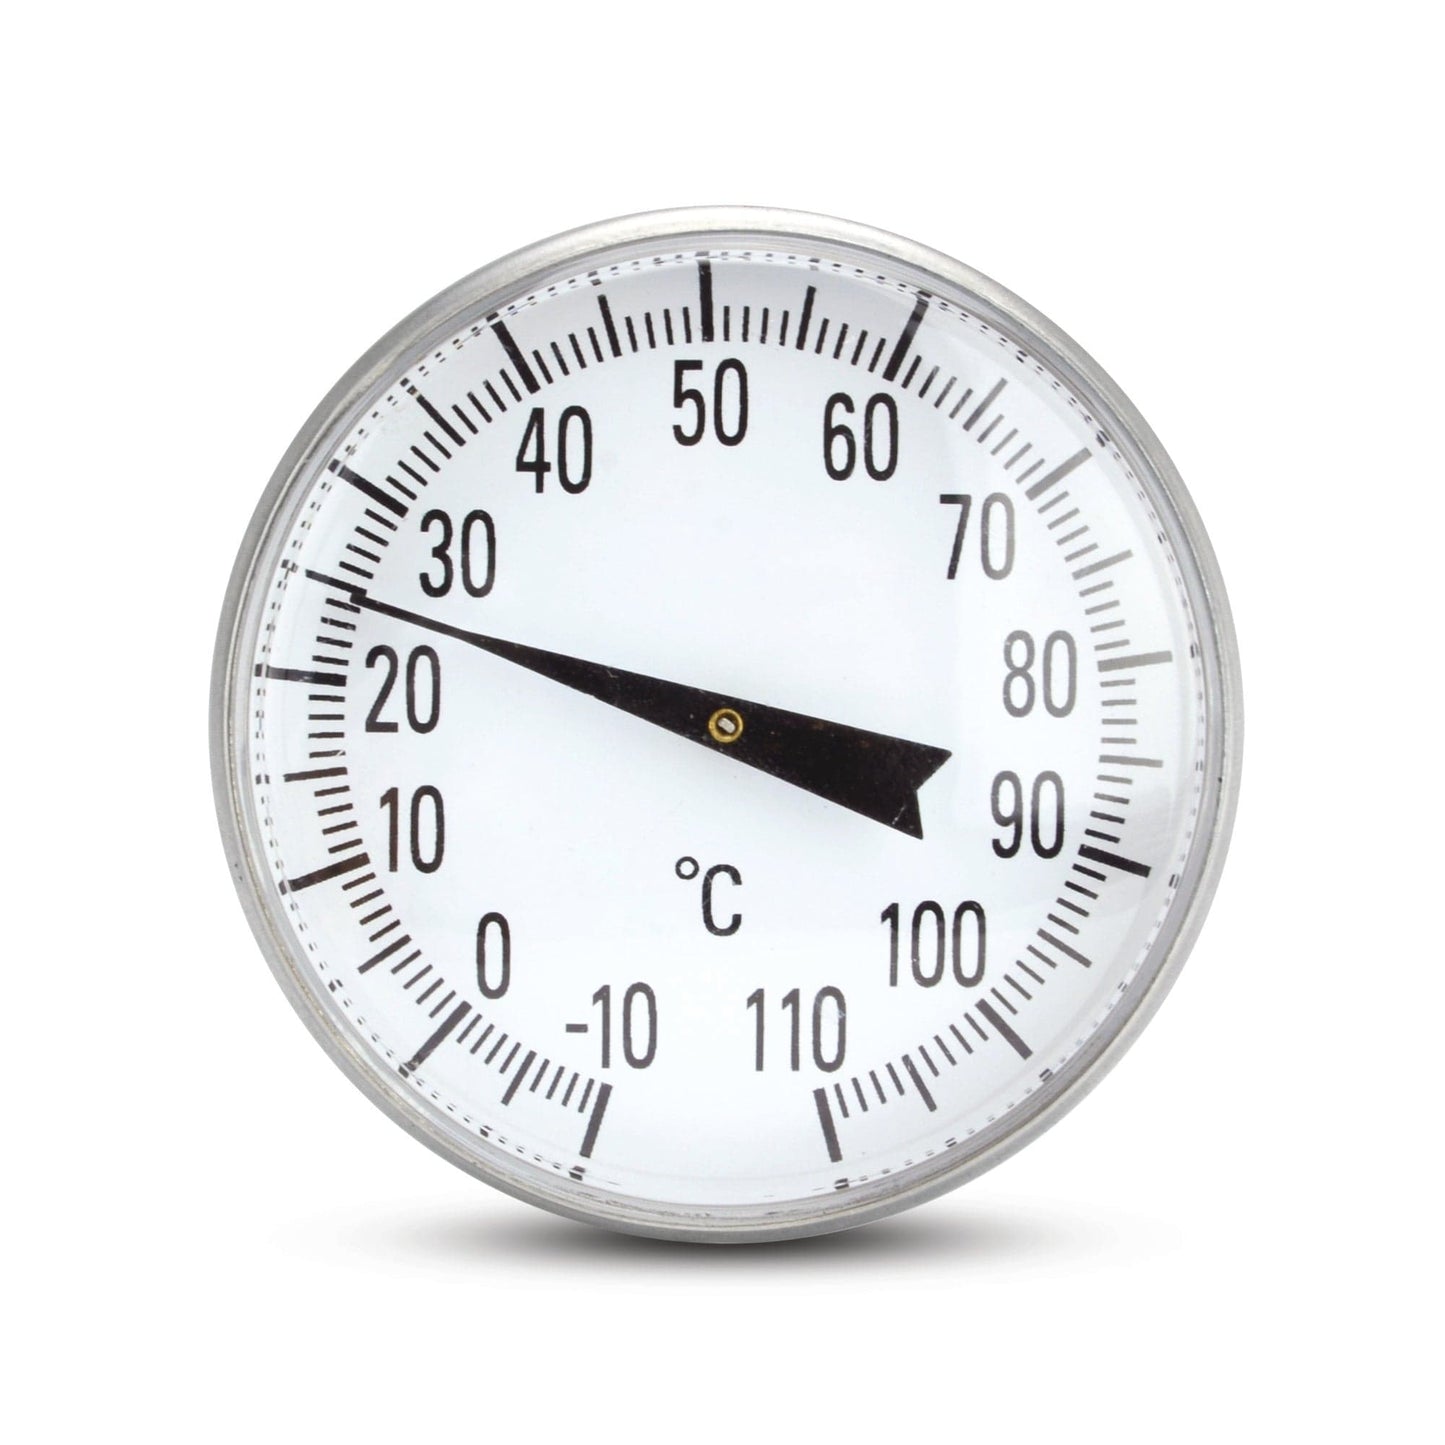 Un thermomètre Thermometre.fr est affiché sur fond blanc.